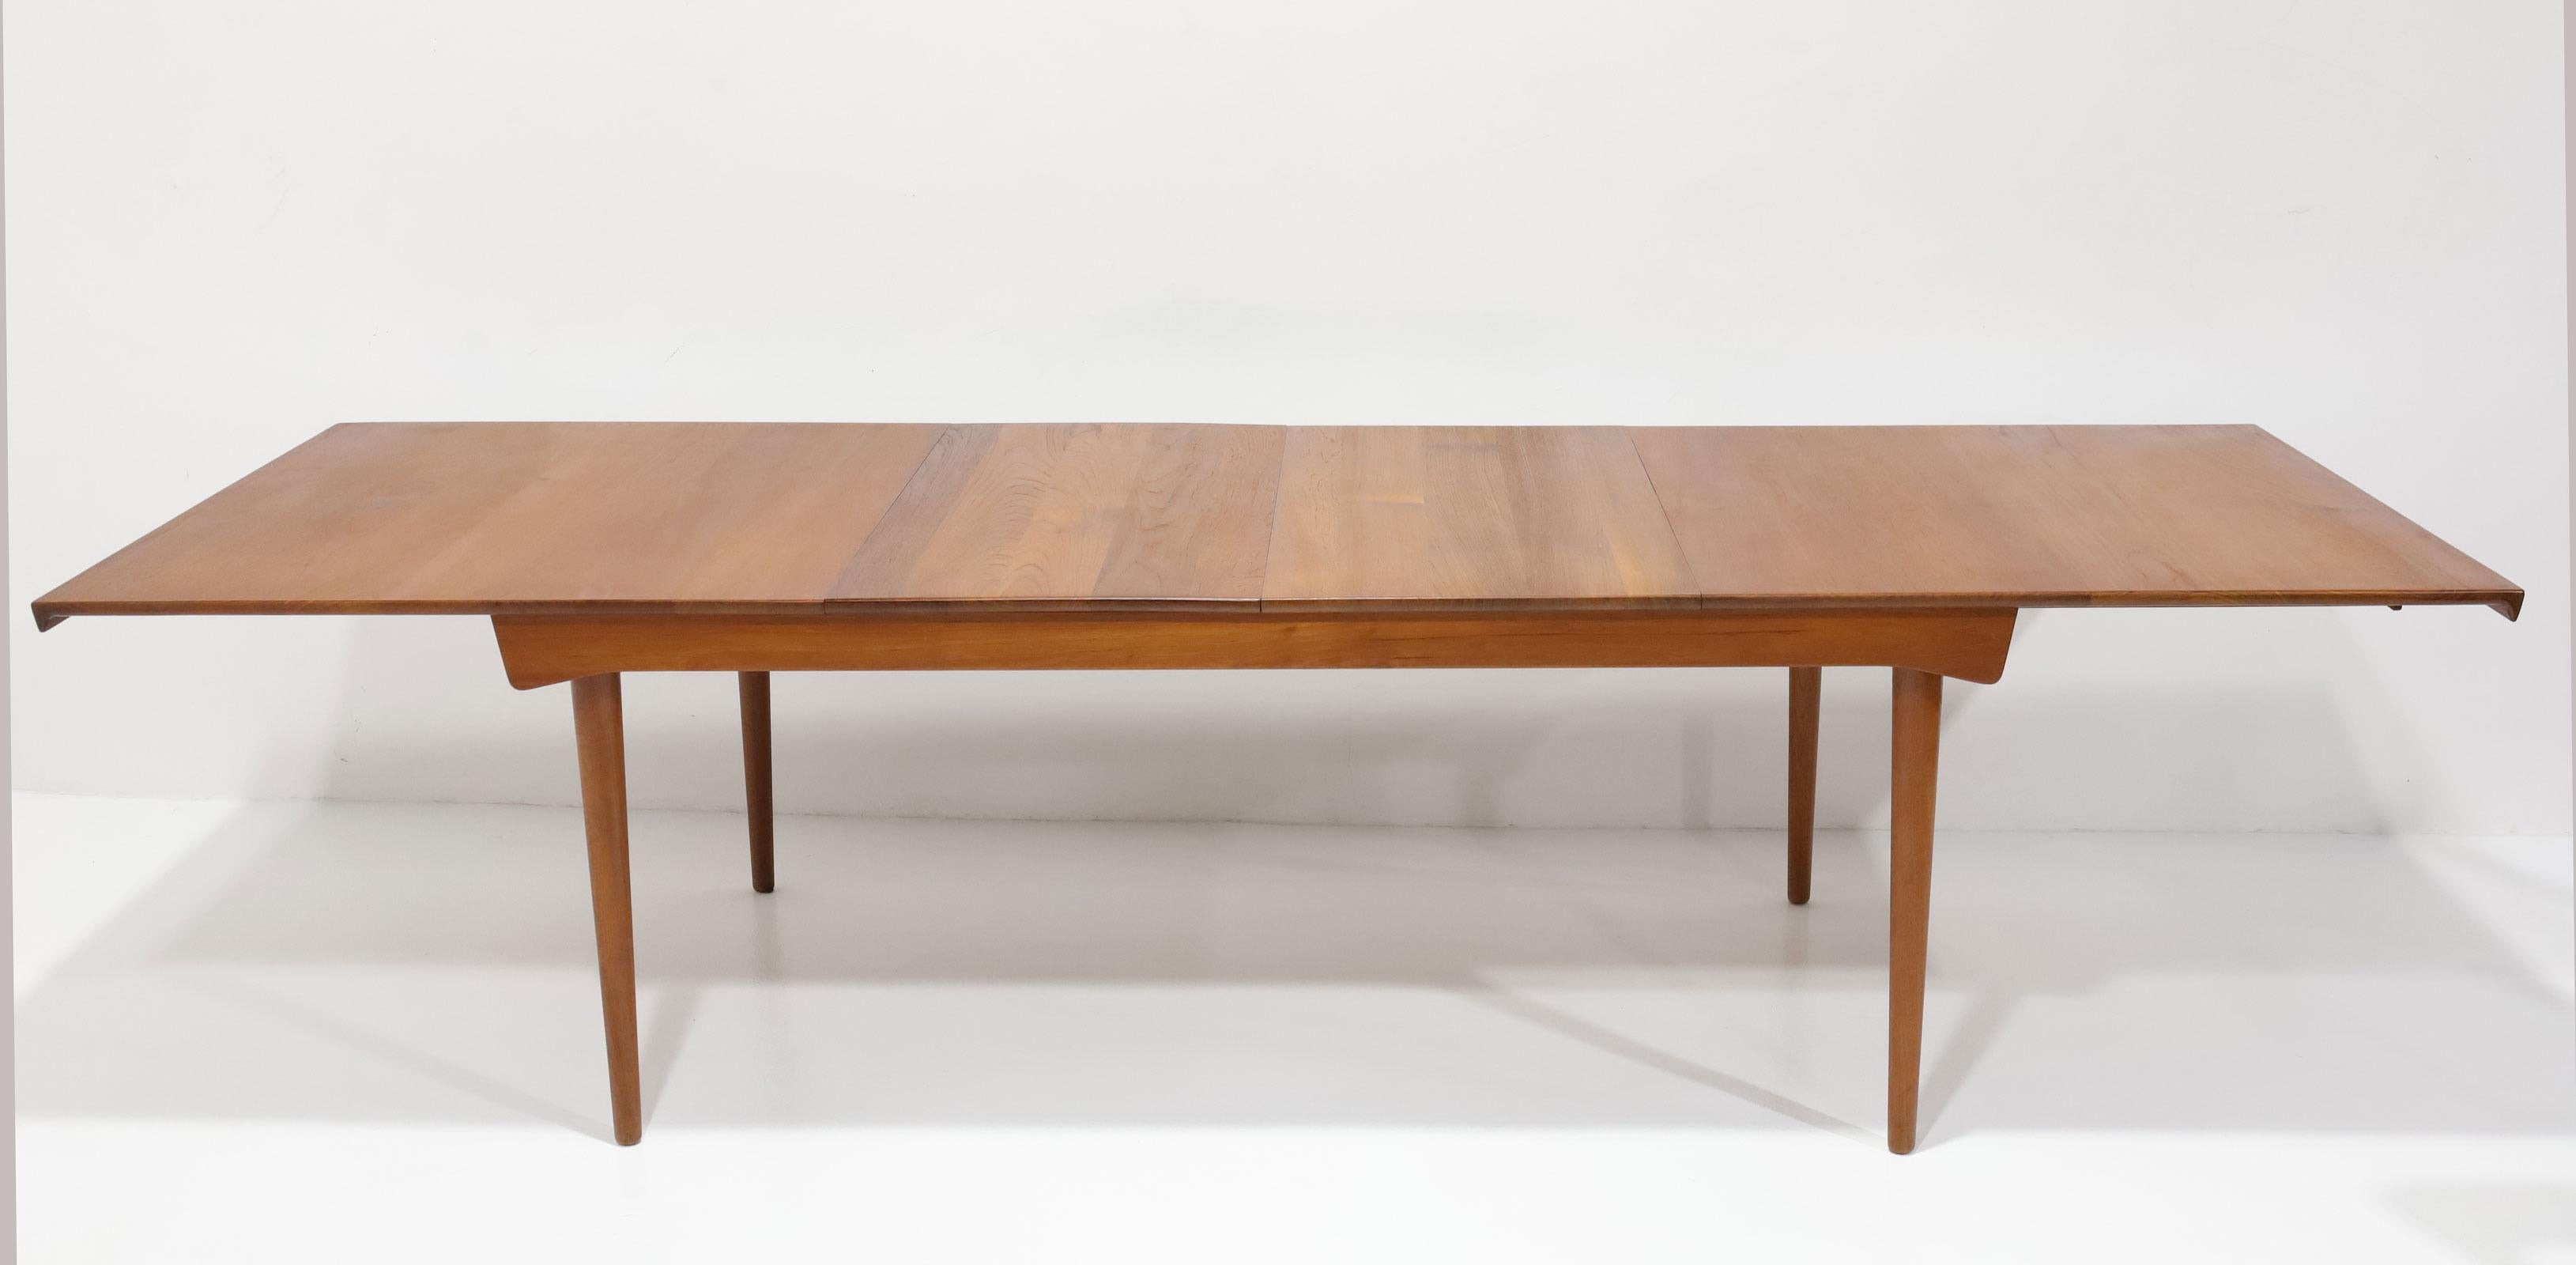 Magnifique table de salle à manger en teck Finn Juhls modèle FD 540. Cette table a été fabriquée par France & Son au Danemark et distribuée par Povl Dinesen. 1950s. Cette table possède deux rallonges sous la table. Chaque feuille mesure 19,75